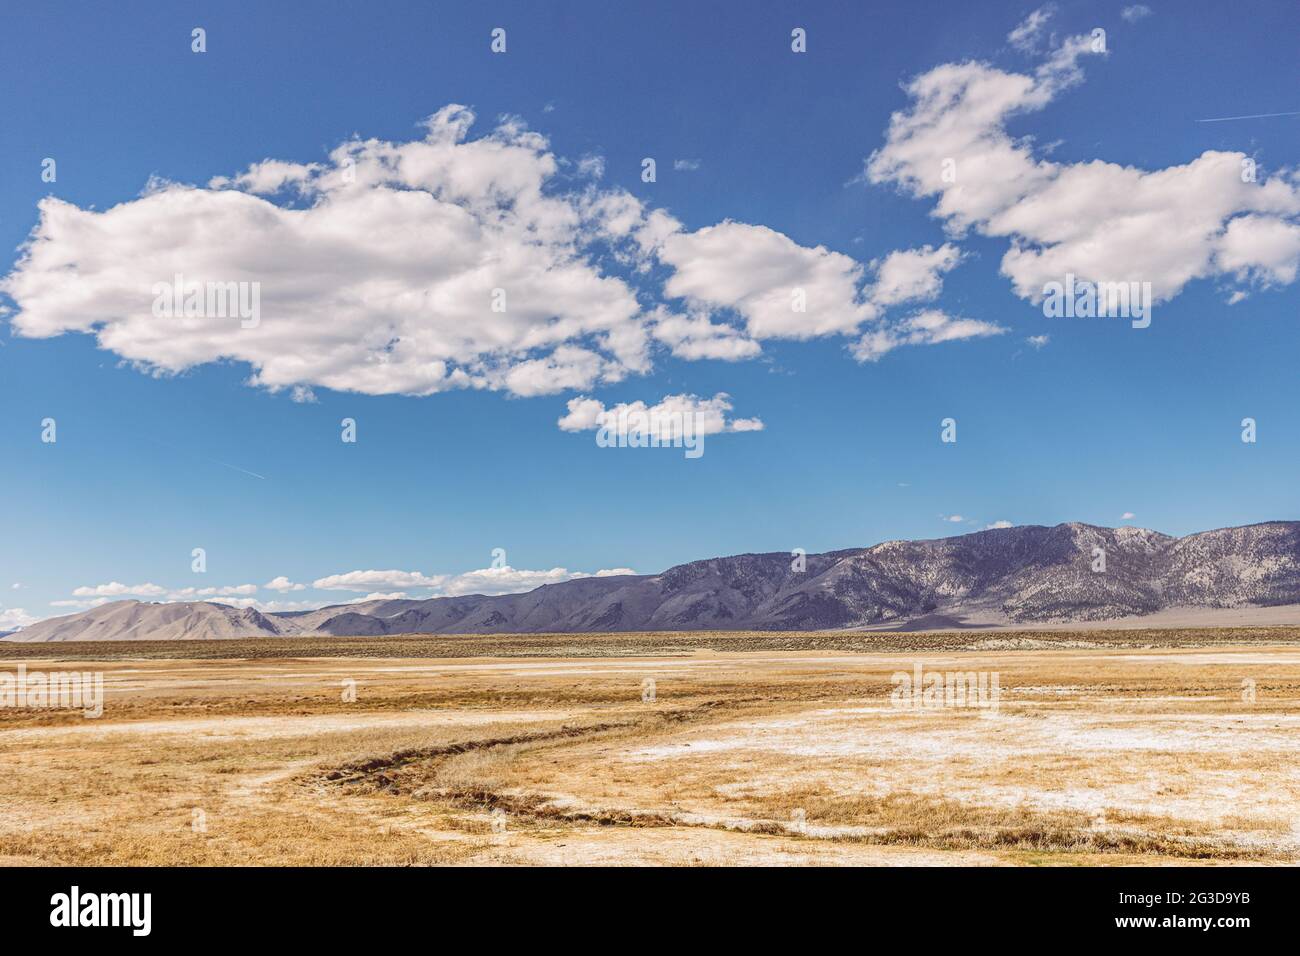 Die Ebenen der Sierra Nevada und der blaue Himmel mit Wolken sind von einer unbeständigen Ebene bedeckt Stockfoto